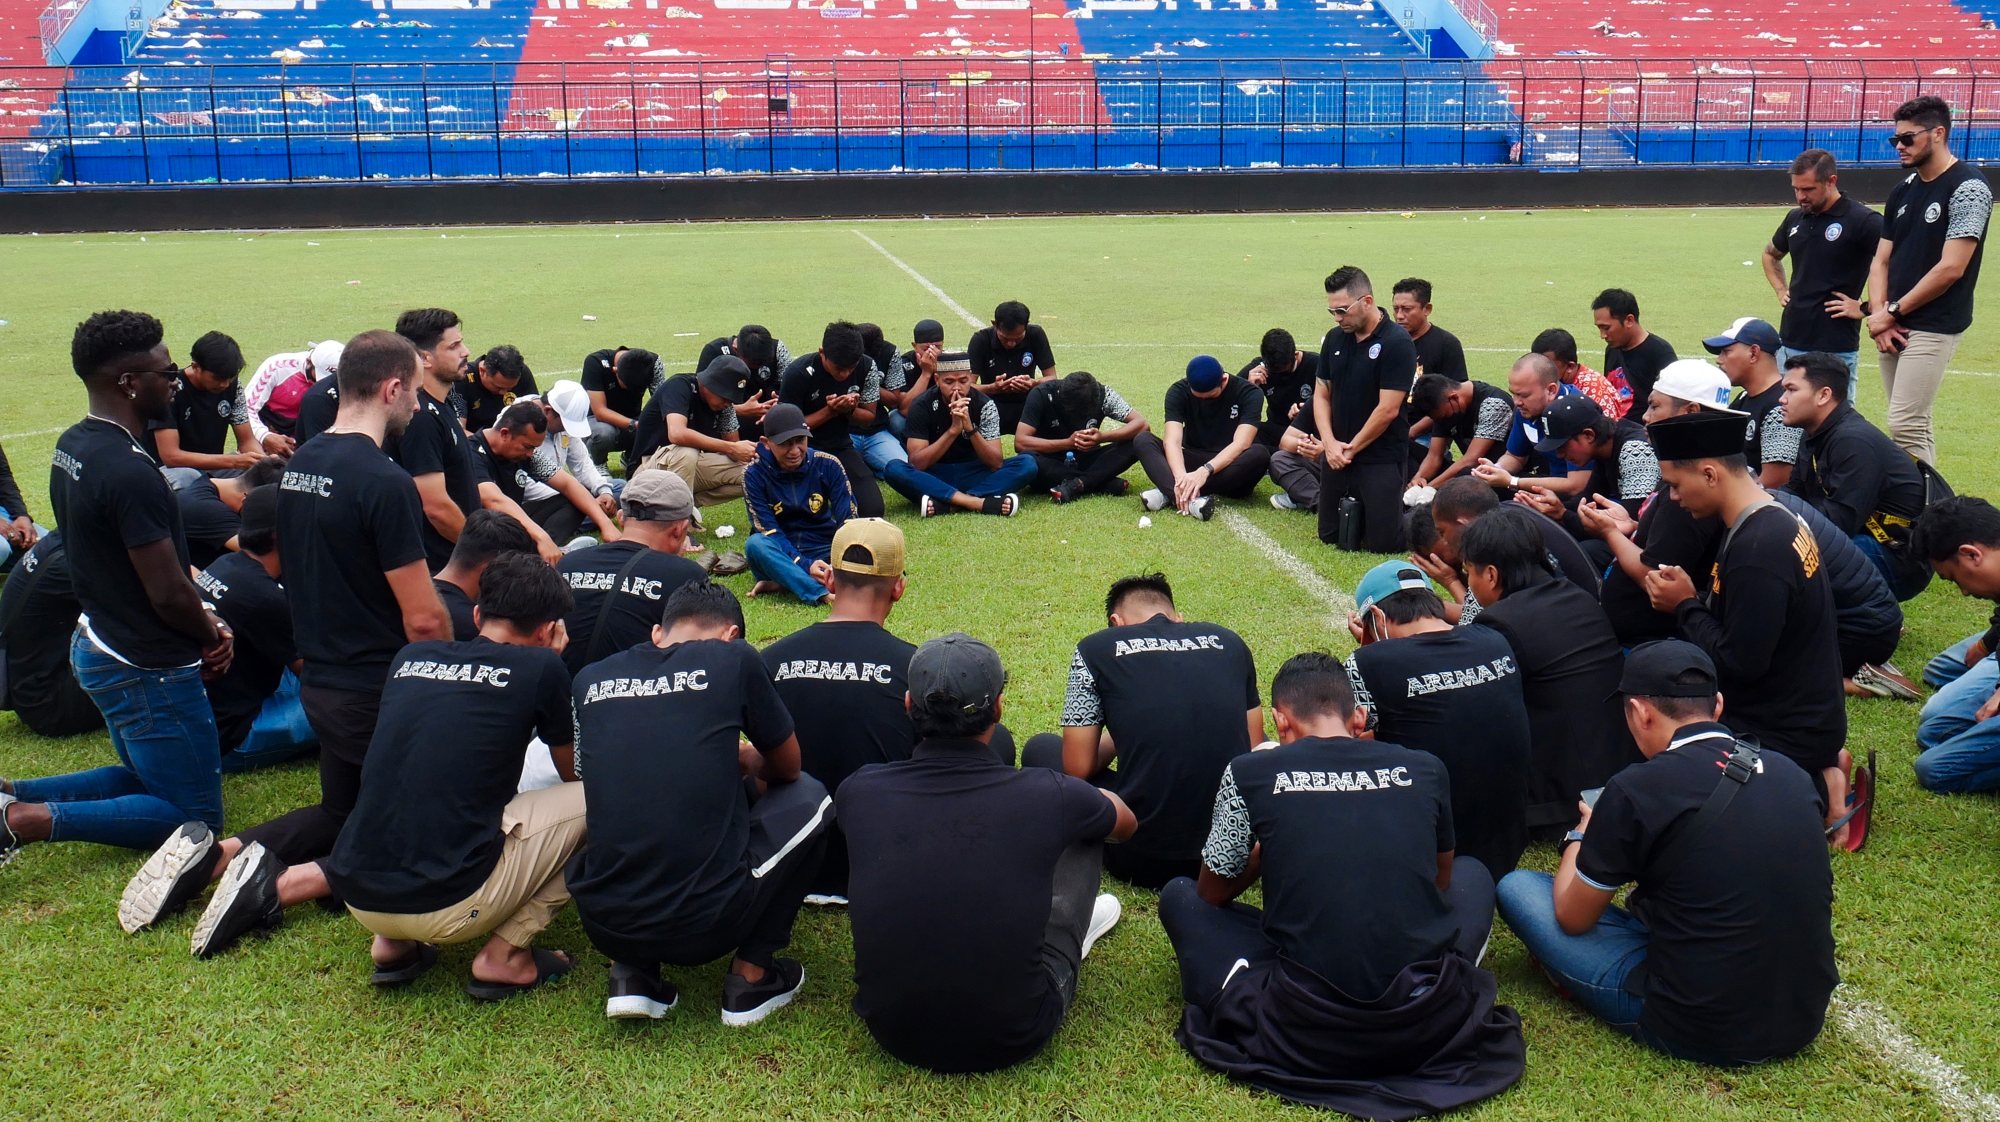 Jogadores do Arema juntaram-se às homenagens feitas este domingo no Estádio Kanjuruhan após a tragédia após o dérbi com o Persebaya Surabay